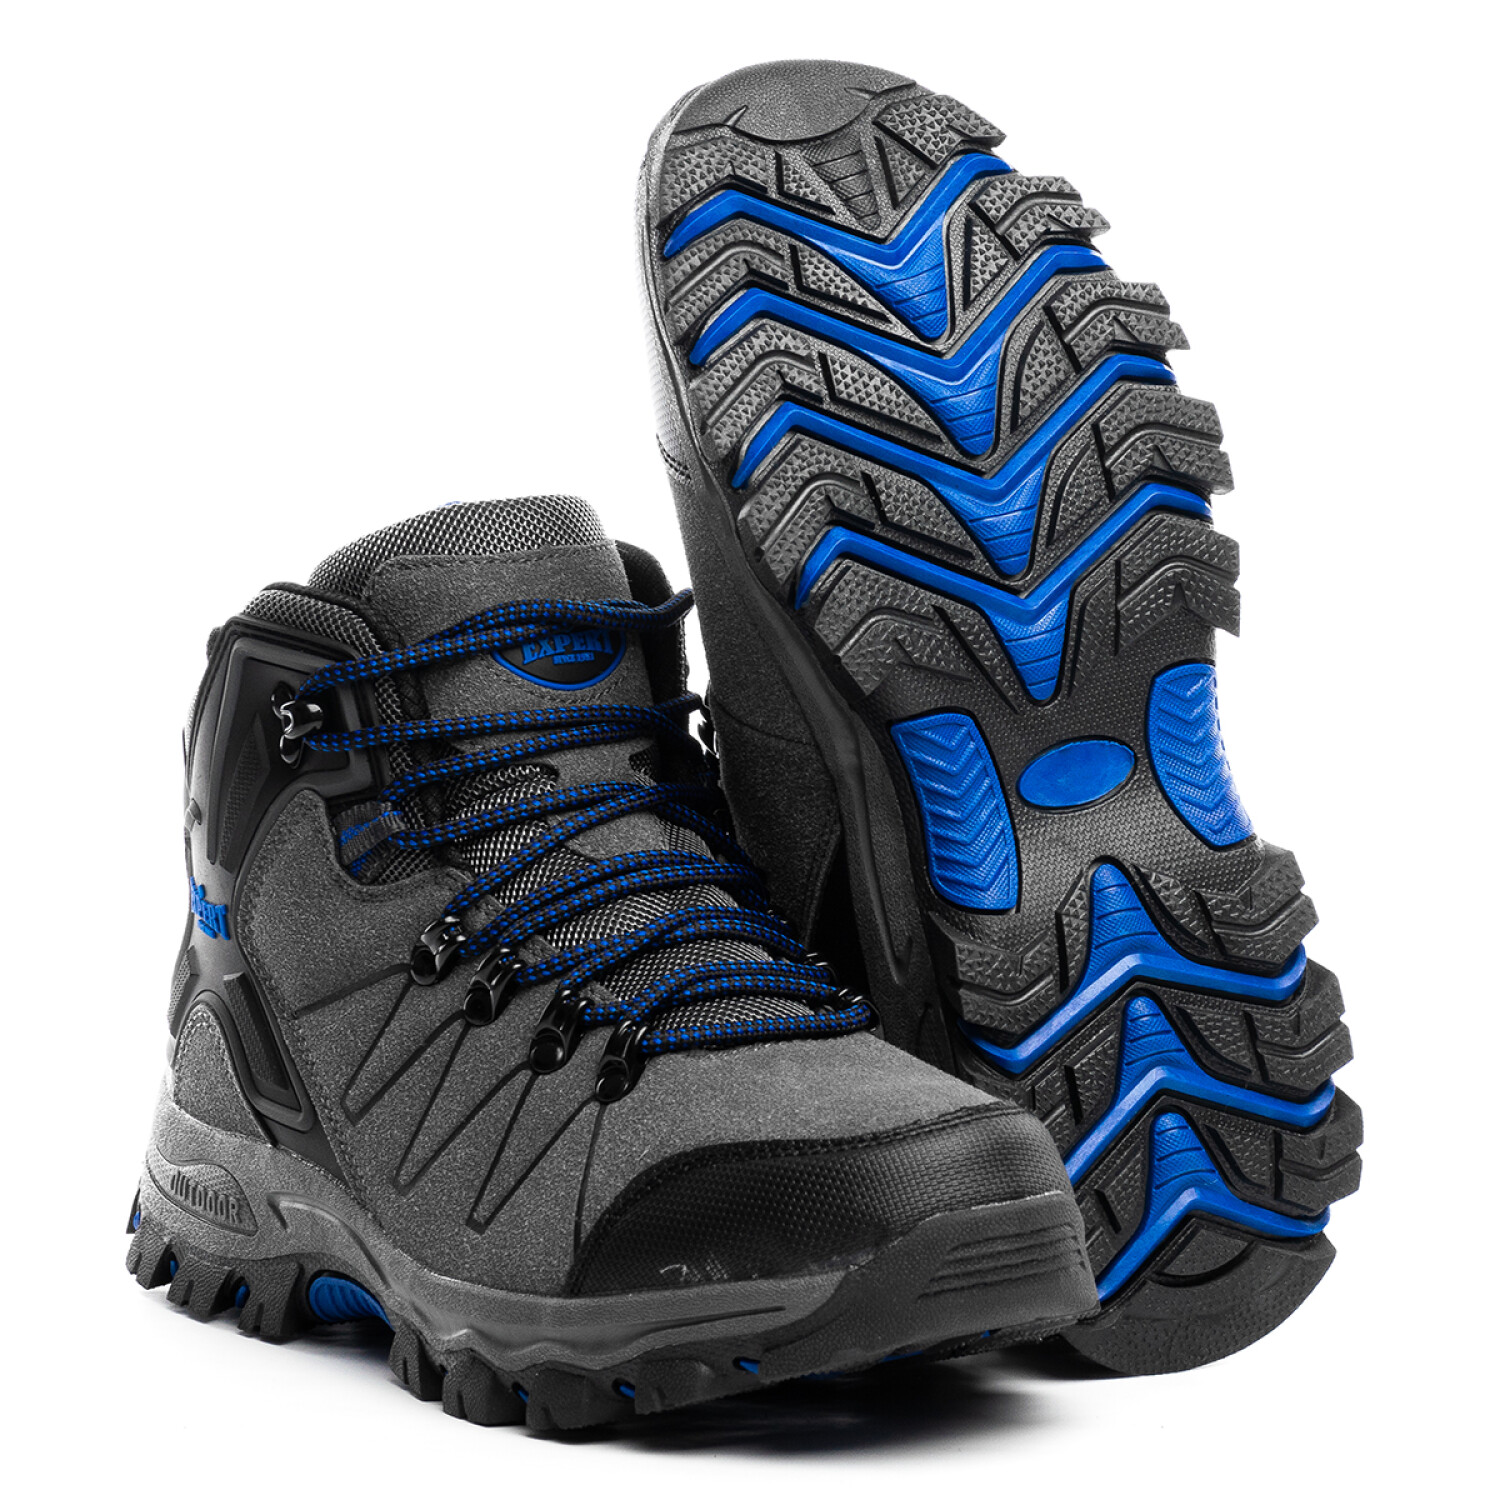 Calzado Botas Tácticas Outdoor Trekking Para Hombre - Azul